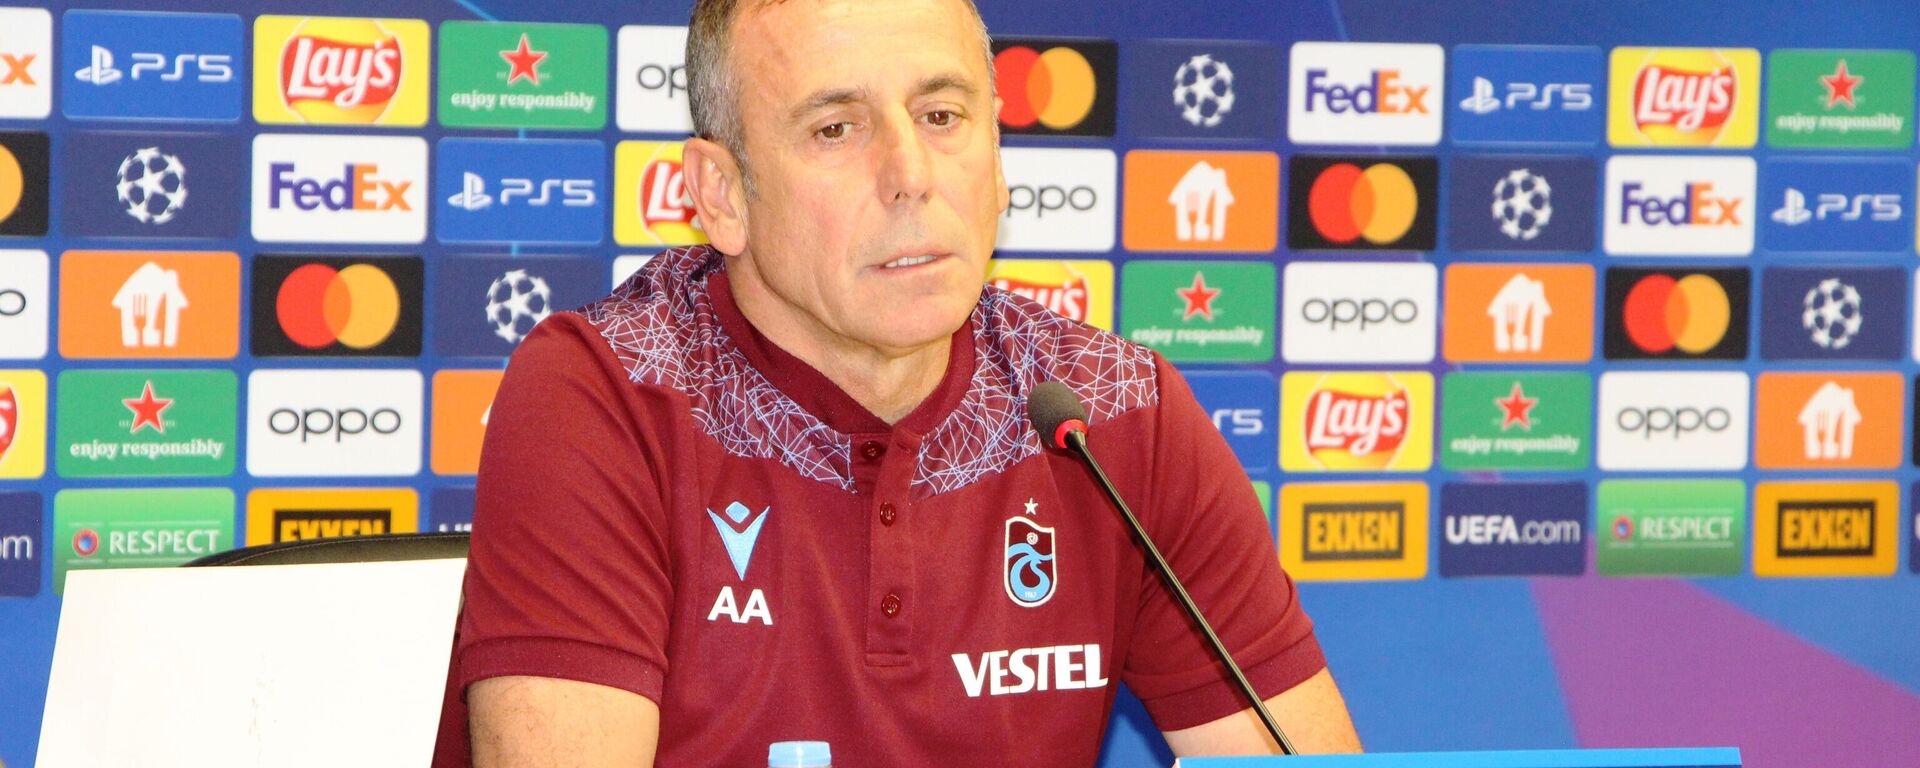 Trabzonspor Teknik Direktörü Abdullah Avcı, Kopenhag karşısında Danimarka'da ilk maçta alınan 2-1'lik mağlubiyetin rövanşını almak istediklerini söyledi. - Sputnik Türkiye, 1920, 29.08.2022